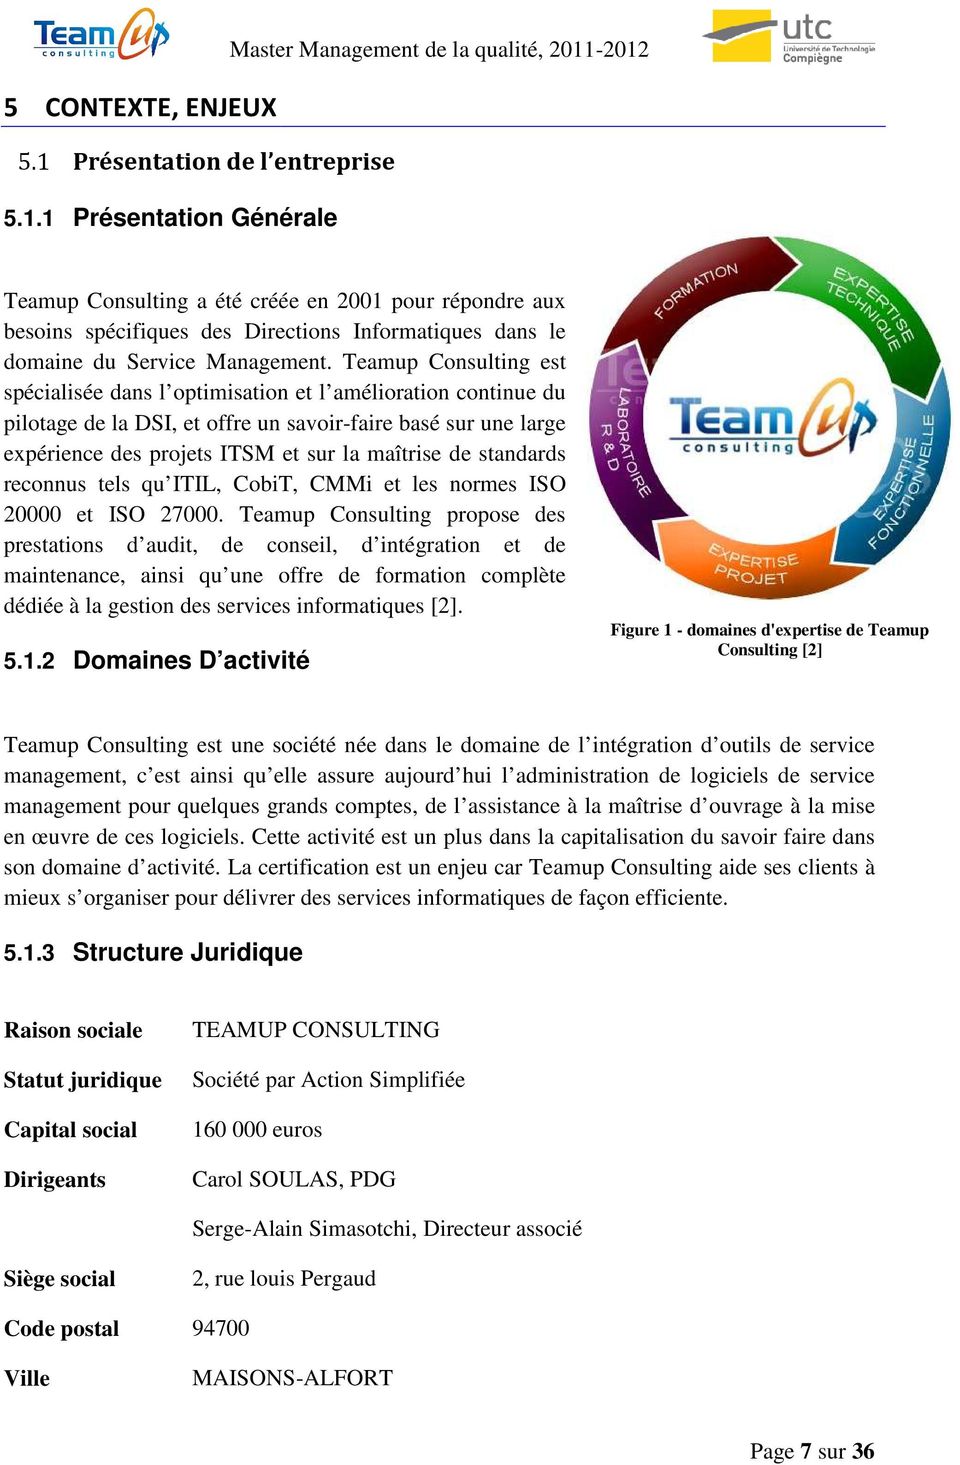 1 Présentation Générale Master Management de la qualité, 2011-2012 Teamup Consulting a été créée en 2001 pour répondre aux besoins spécifiques des Directions Informatiques dans le domaine du Service